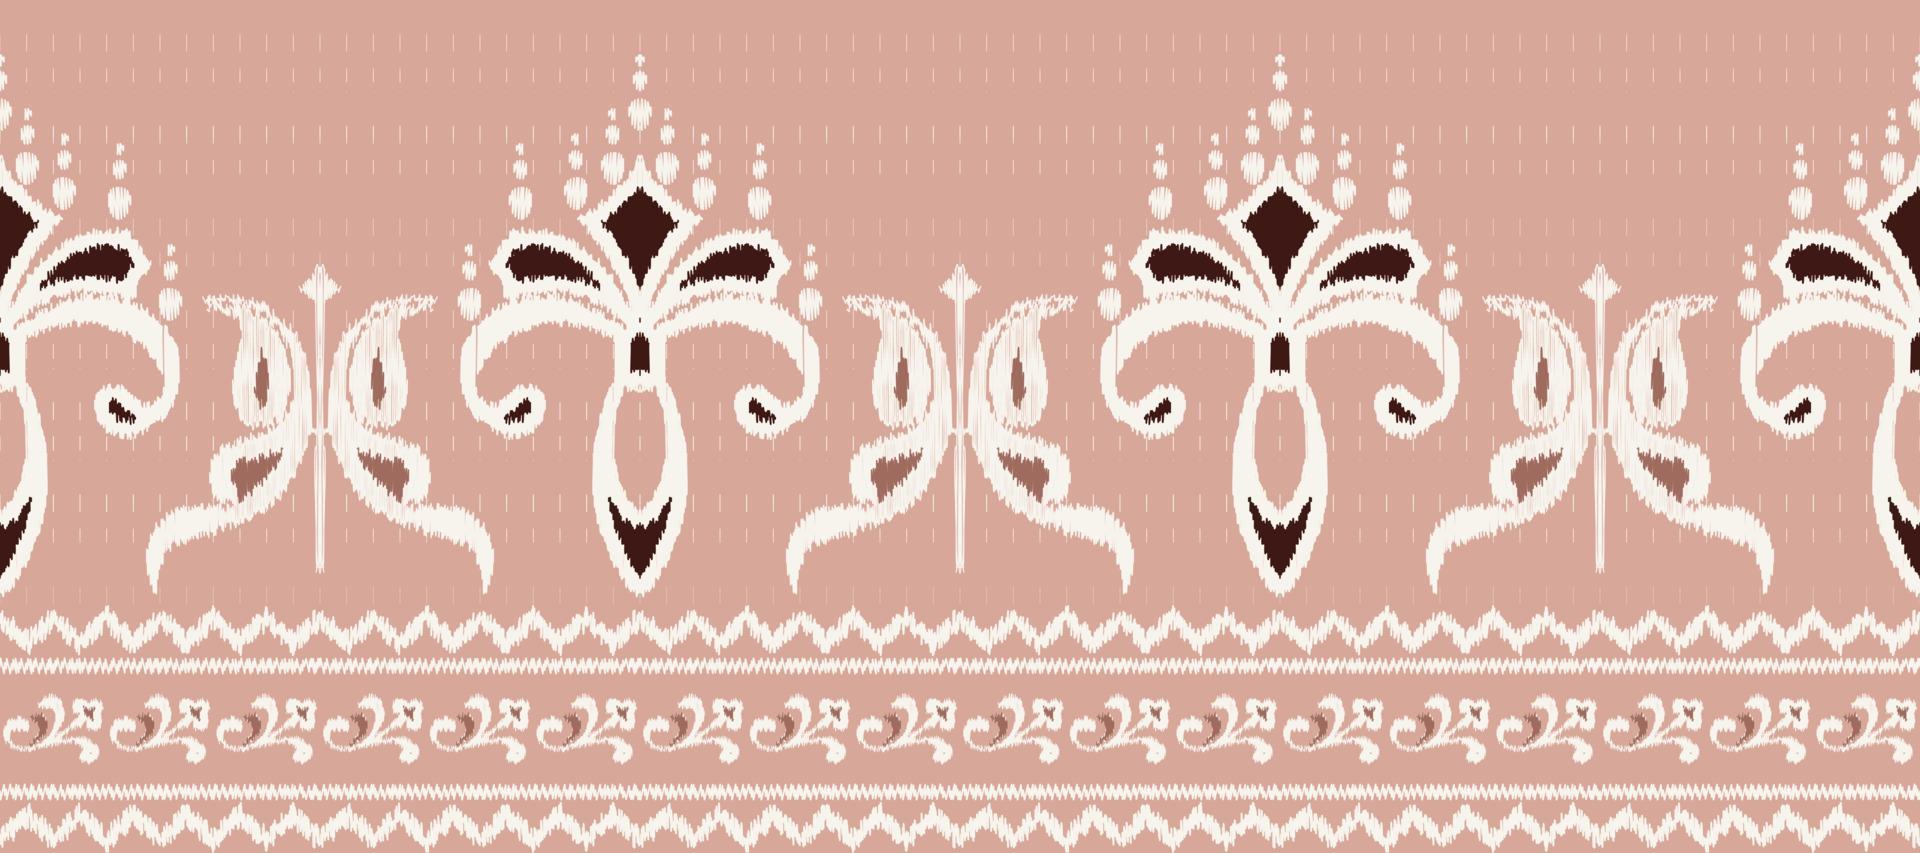 Afrikaanse ikat damast paisley borduurwerk achtergrond. meetkundig etnisch oosters patroon traditioneel. ikat aztec stijl abstract vector illustratie. ontwerp voor afdrukken textuur,stof,sari,sari,tapijt.